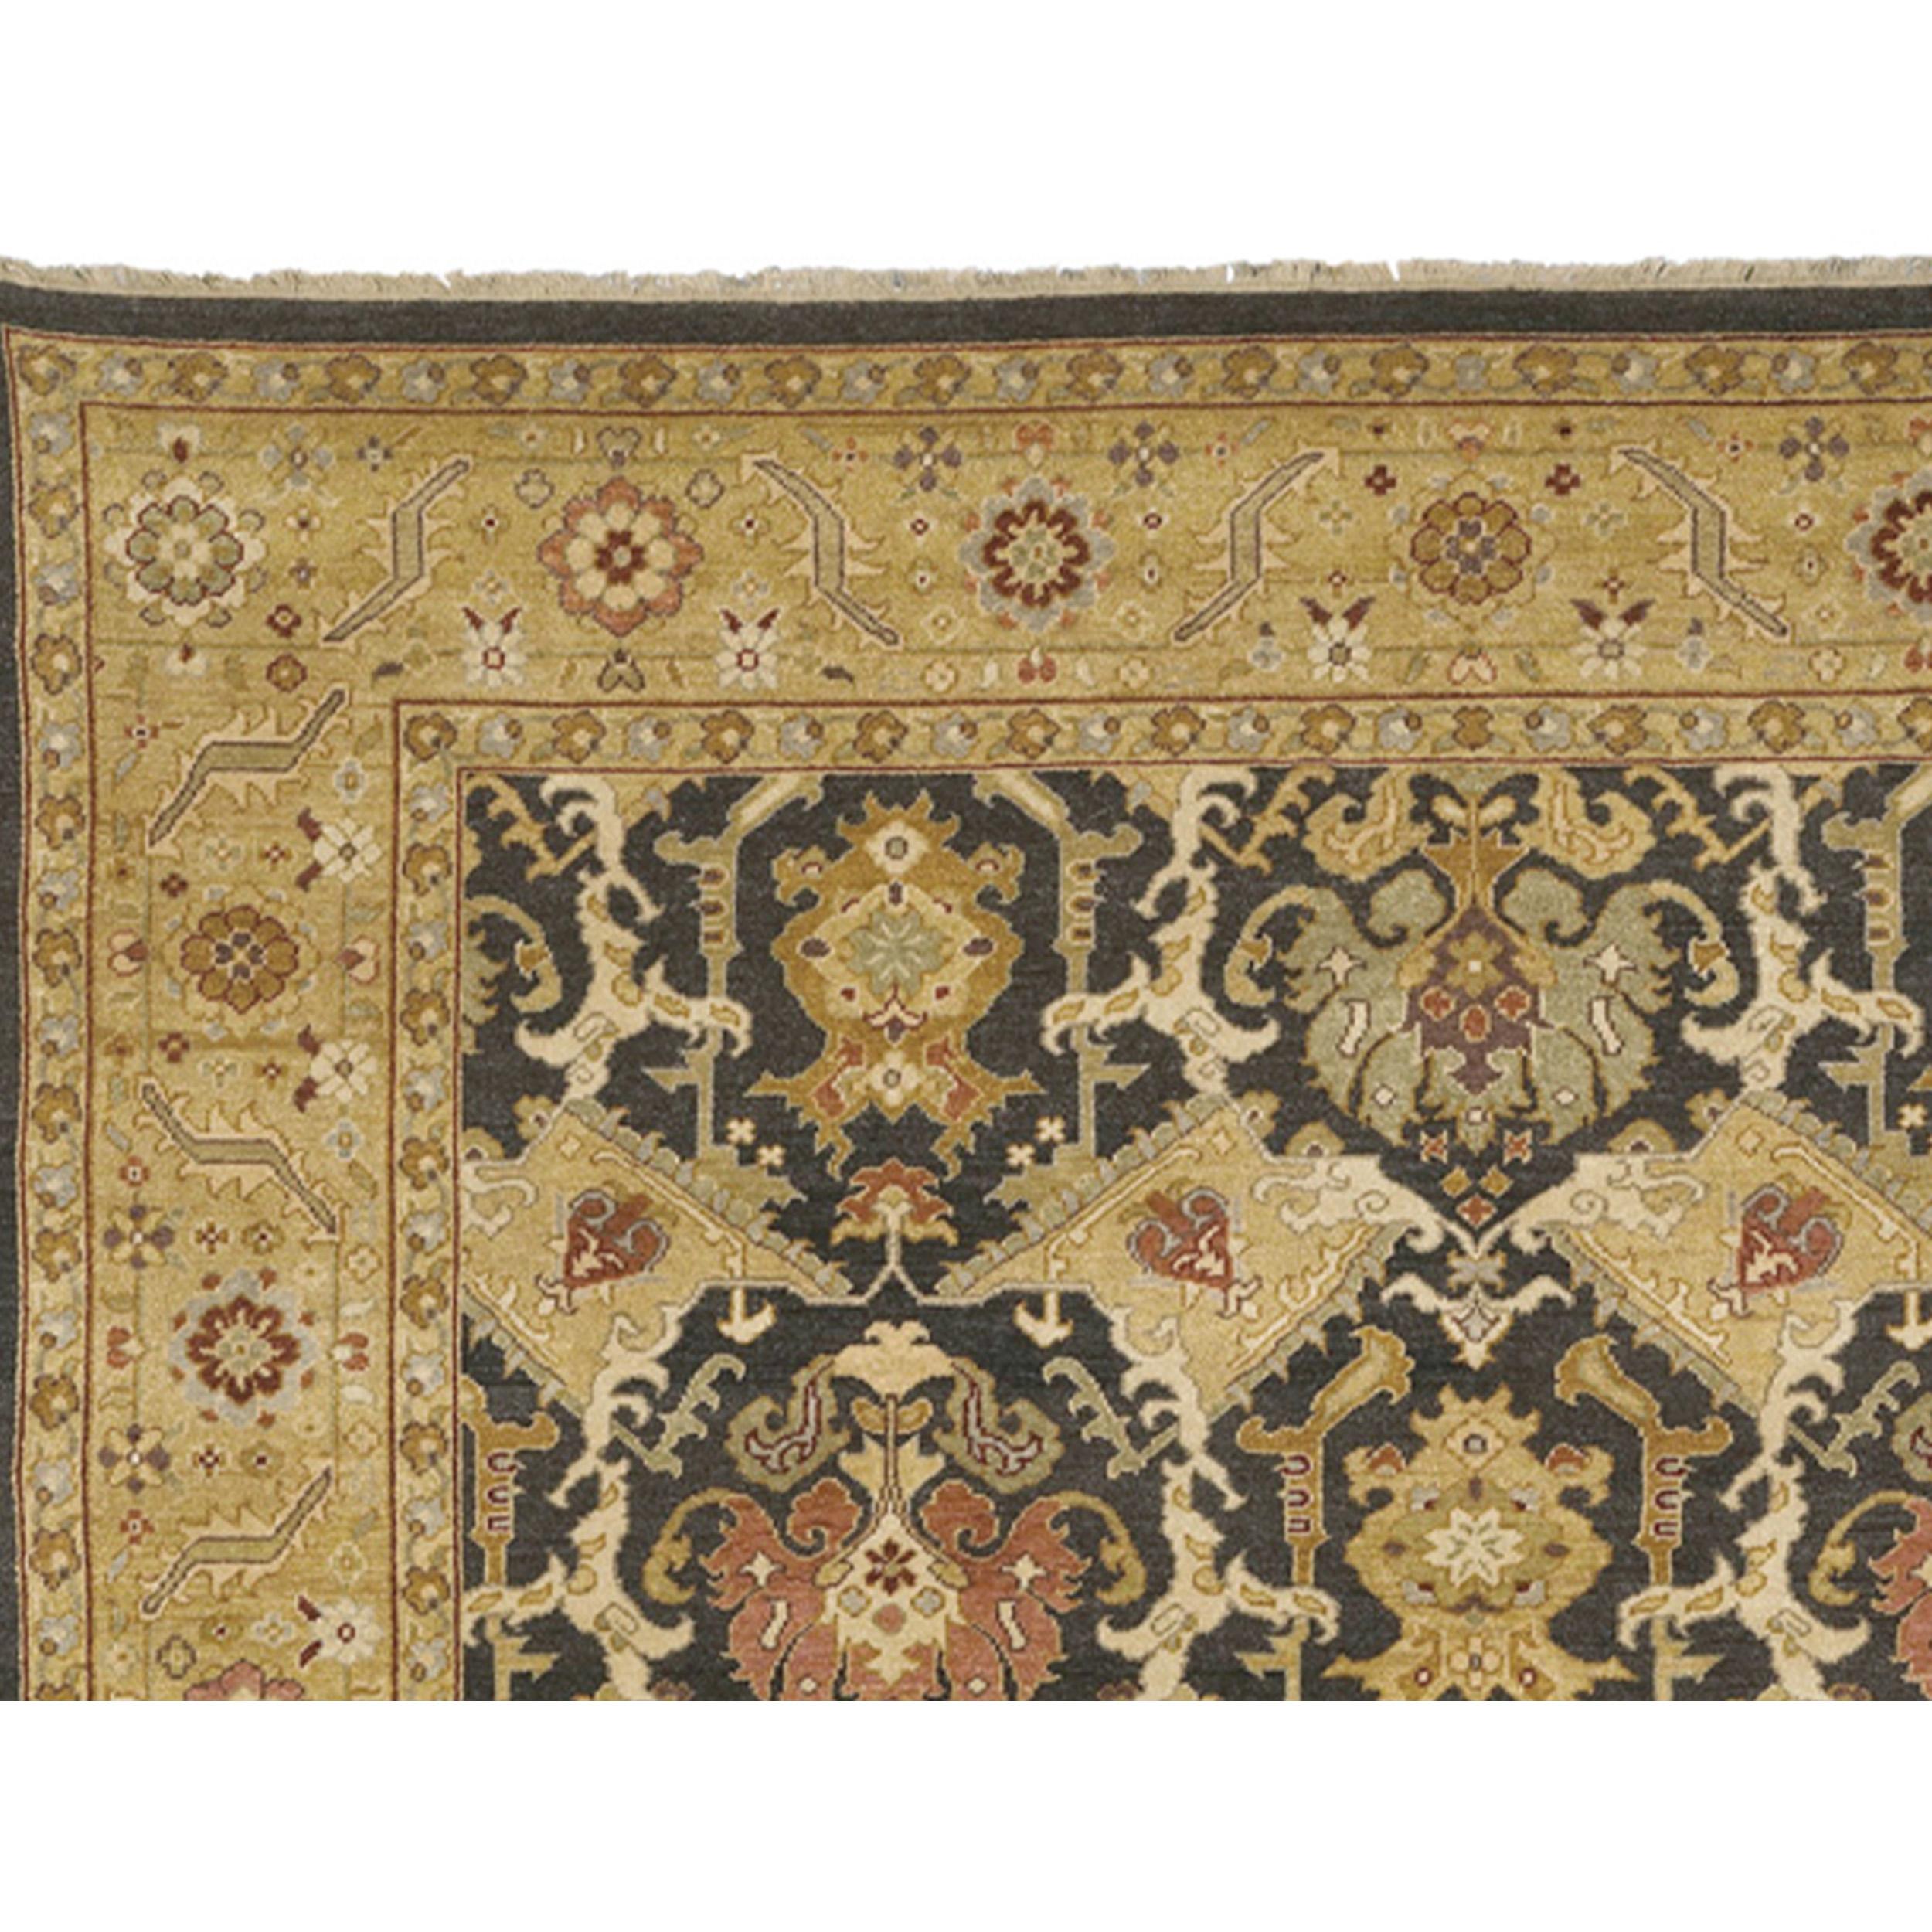 Ein luxuriöser, traditioneller, handgeknüpfter Teppich aus feinster Wolle, der in sorgfältiger Handarbeit hergestellt wurde. Dieser Teppich ist mehr als ein Gebrauchsgegenstand, er ist ein Kunstwerk, das die Sinne erfreut und perfekt mit einer